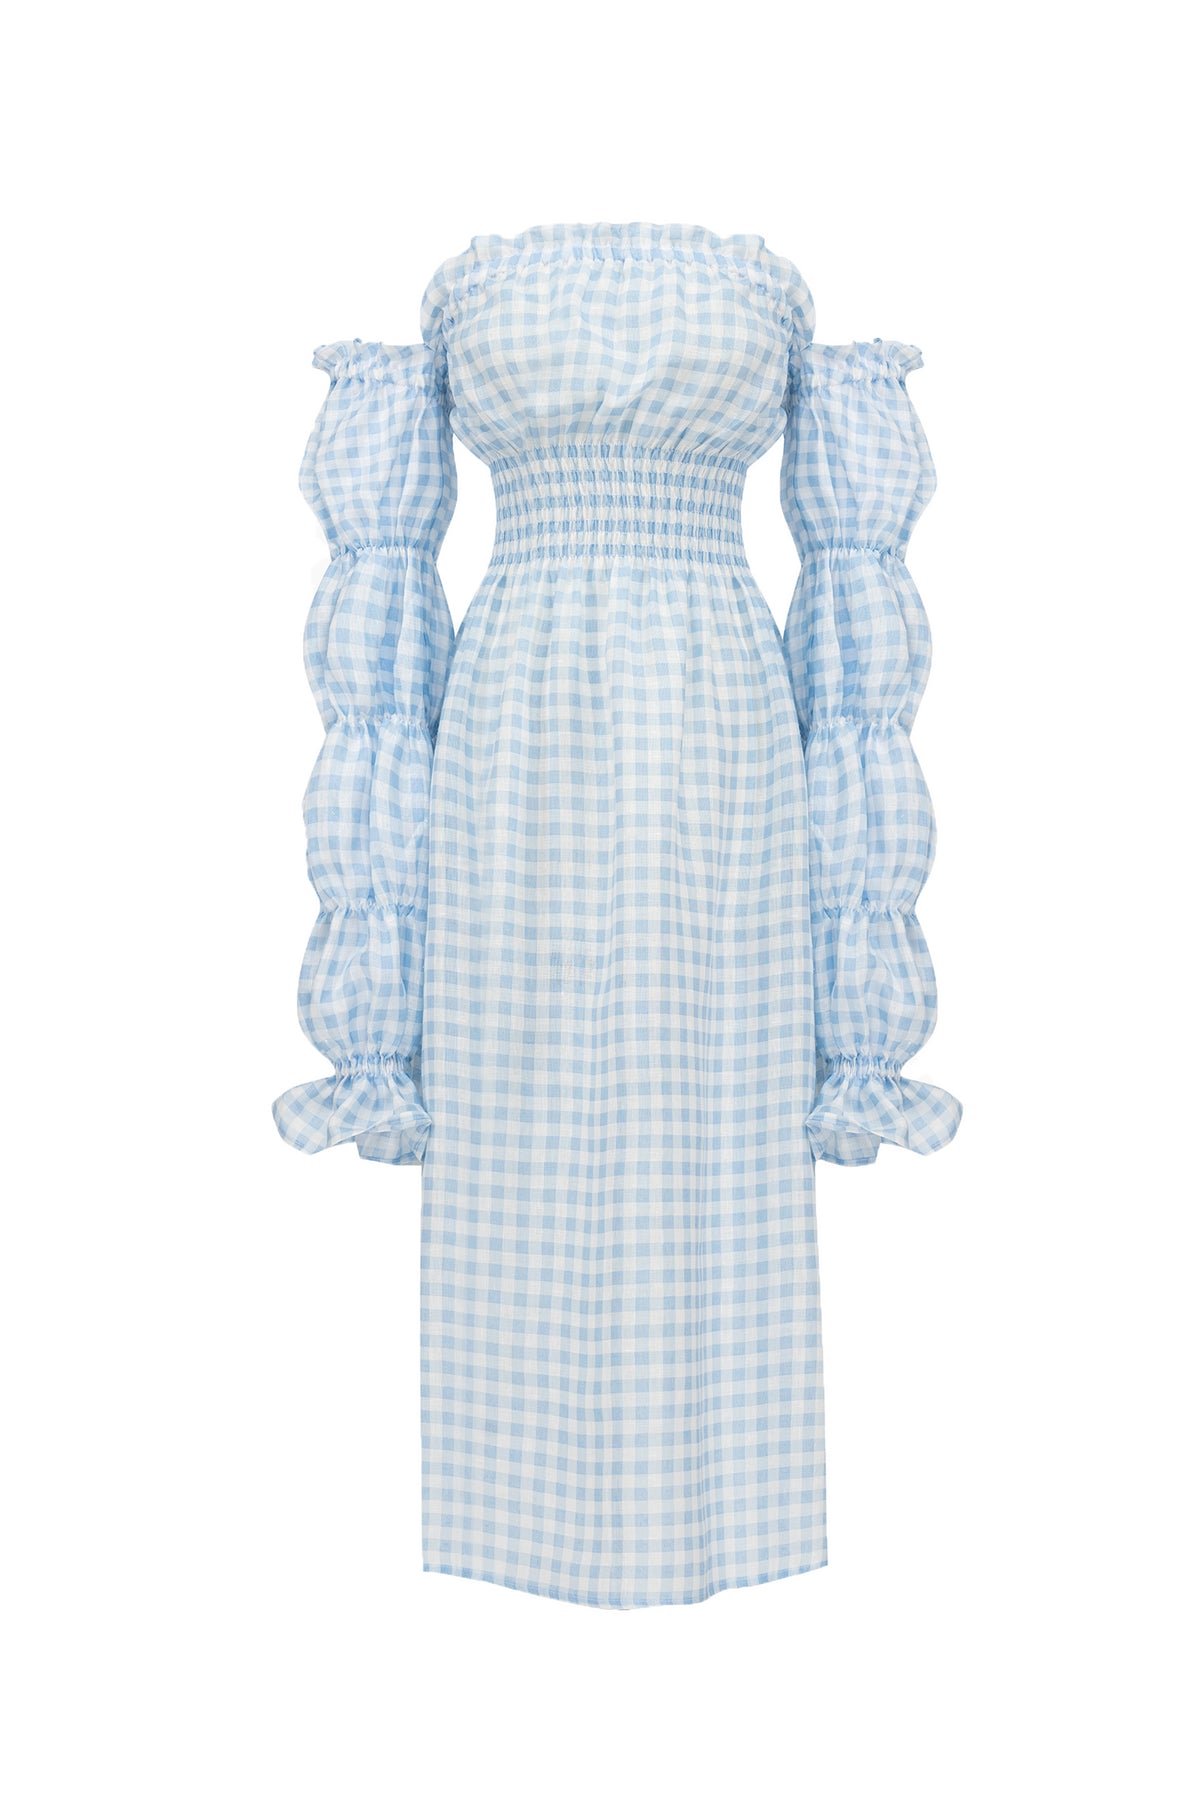 Michelin Linen Dress in Blue Vichy